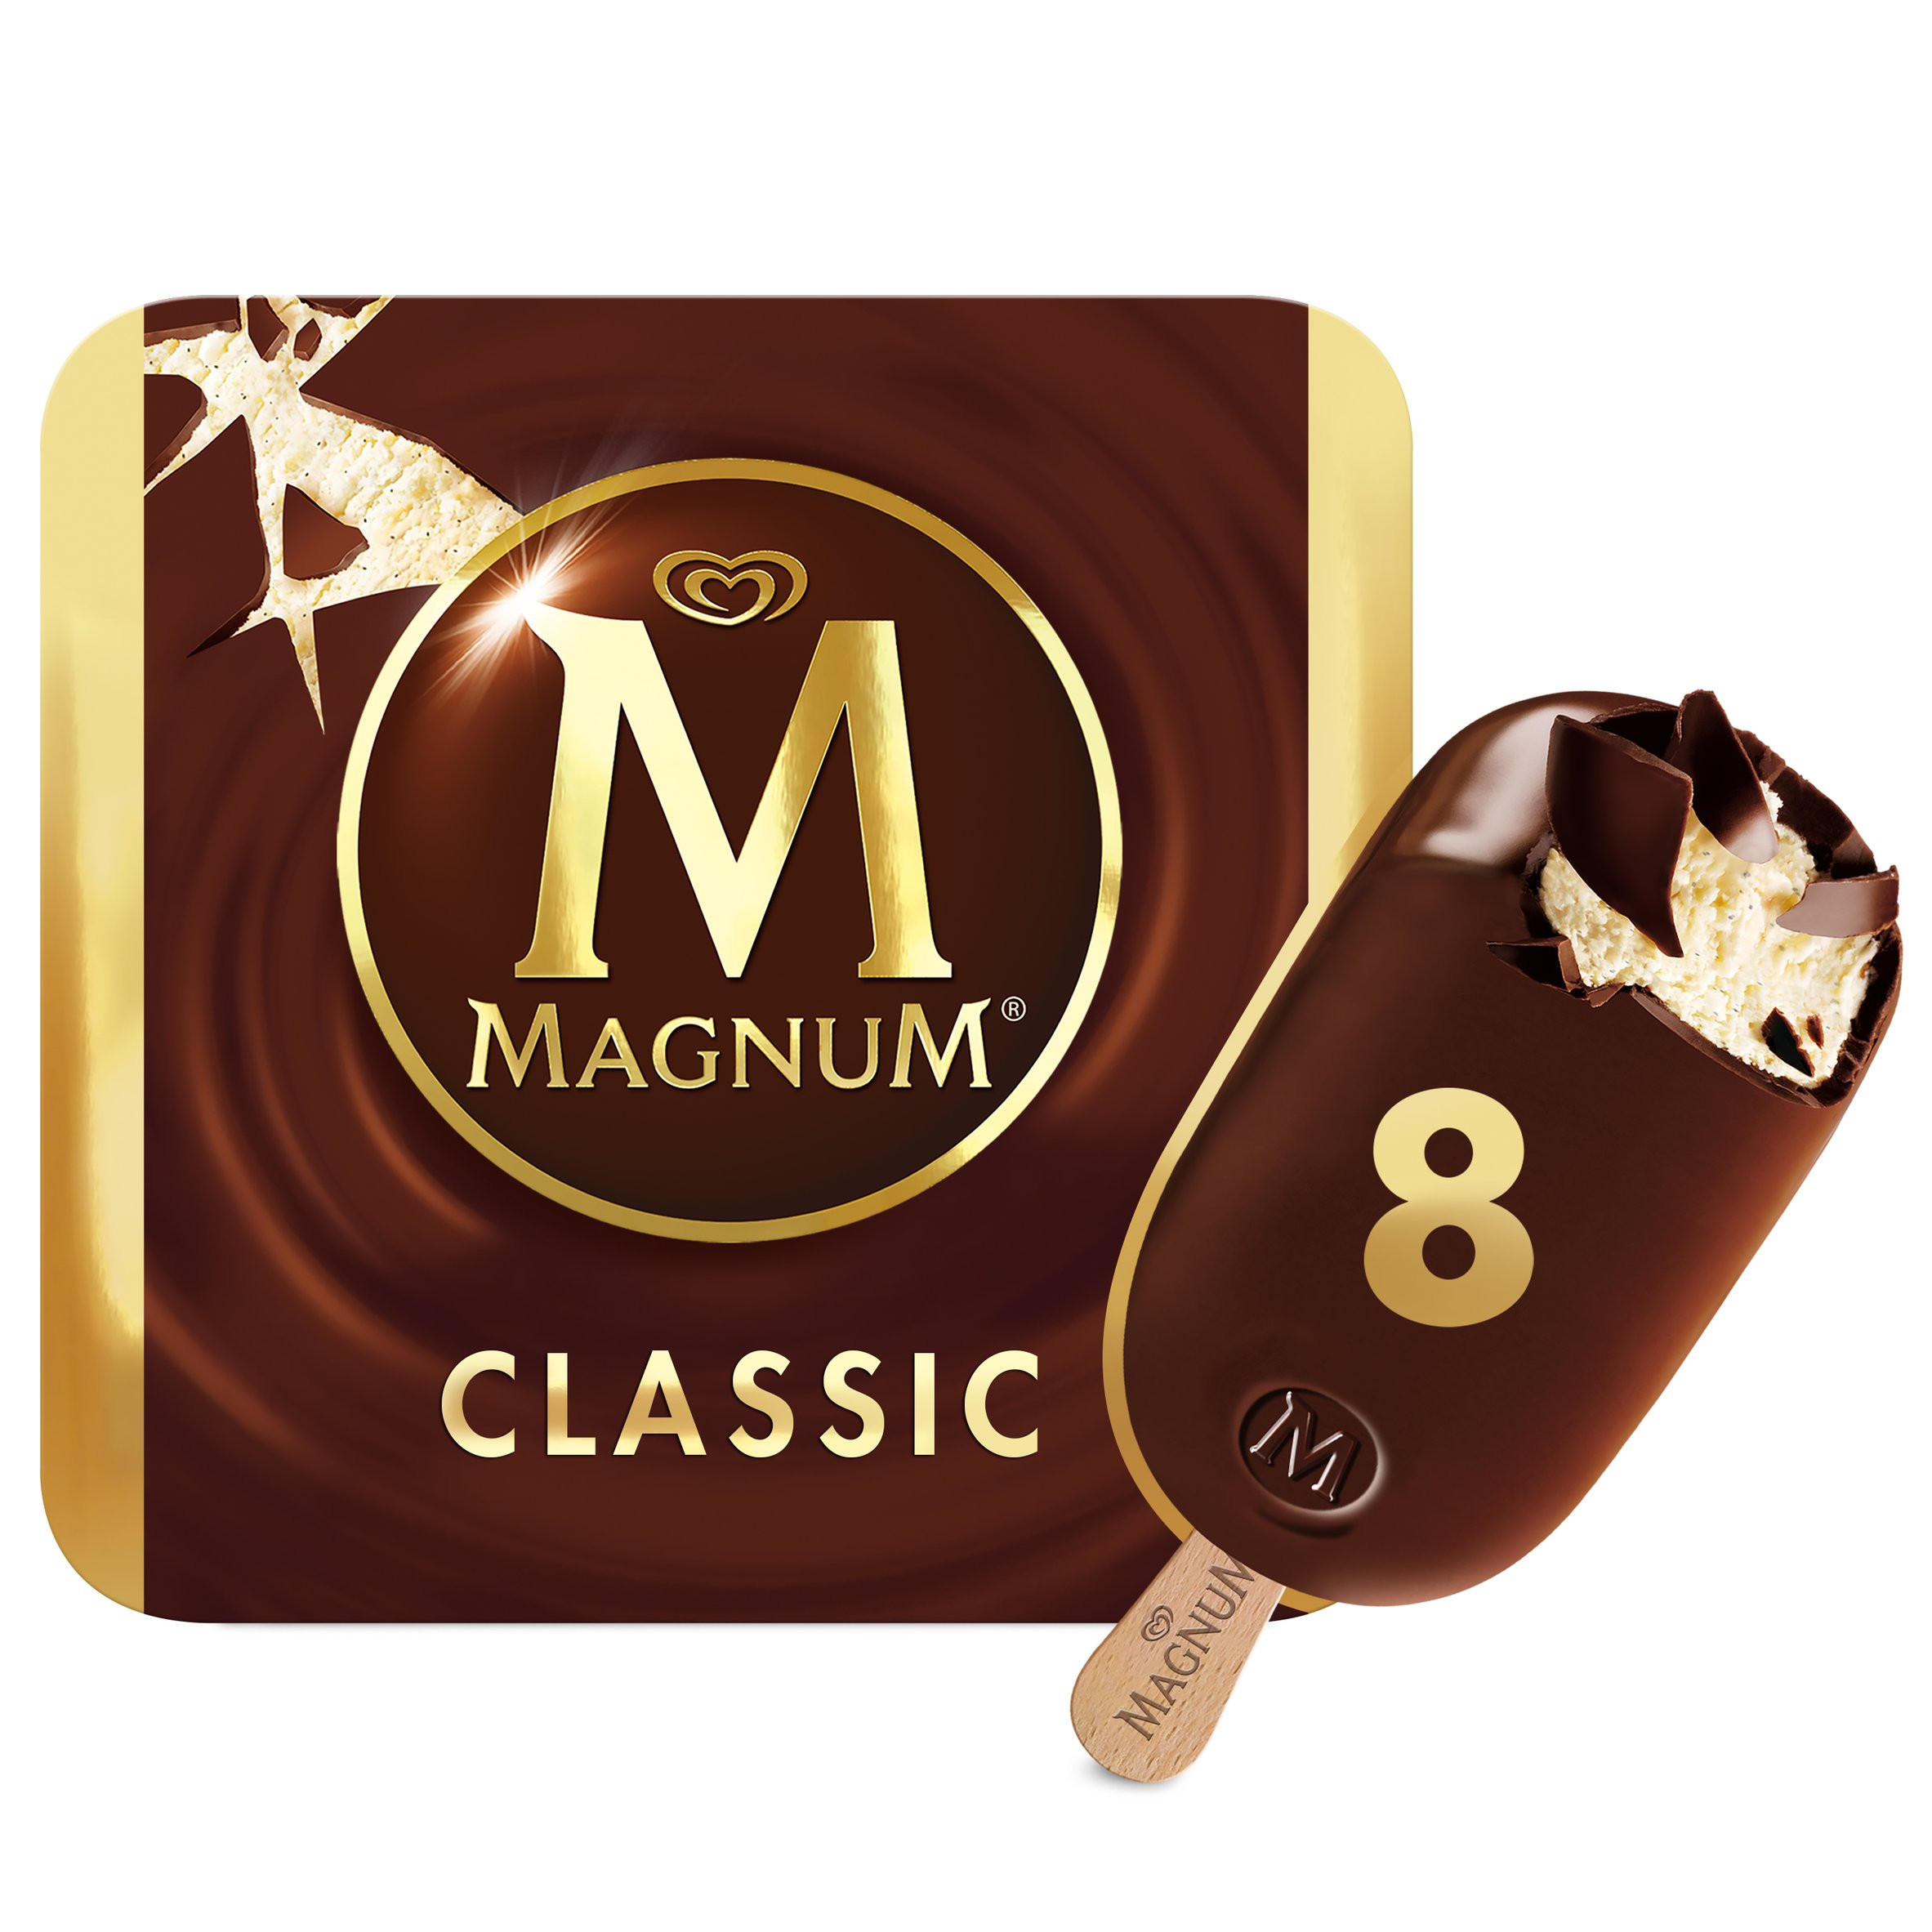 Magnum Classic Ice Cream 8 x 110ml | Ice Cream Cones, Sticks & Bars ...